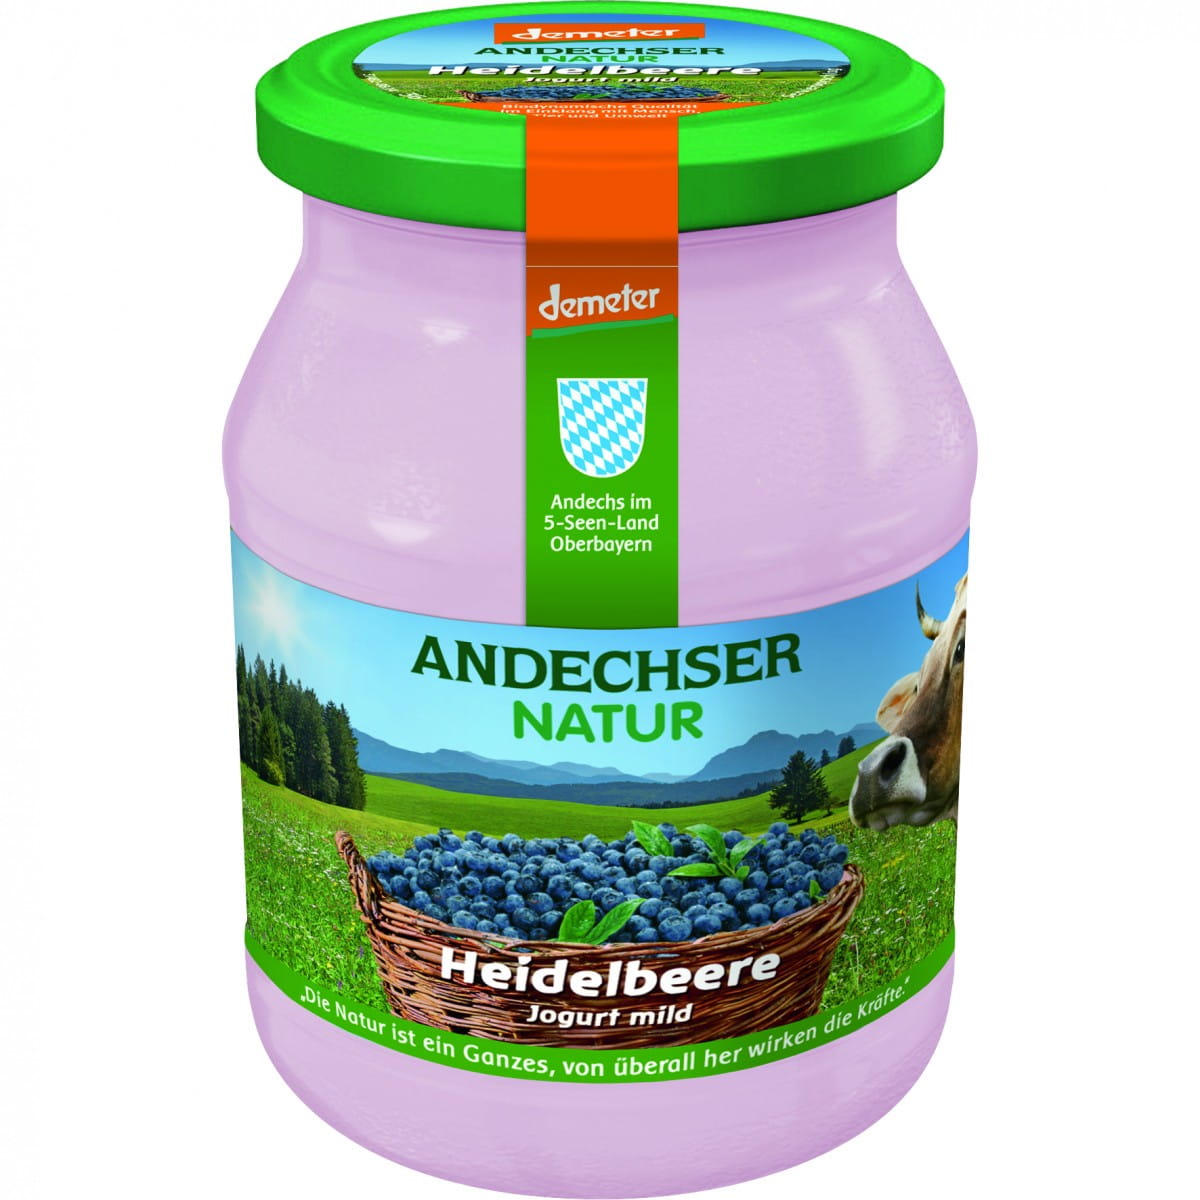 Heidelbeerjoghurt 37% demeter BIO 500 g ANDECHSER NATUR